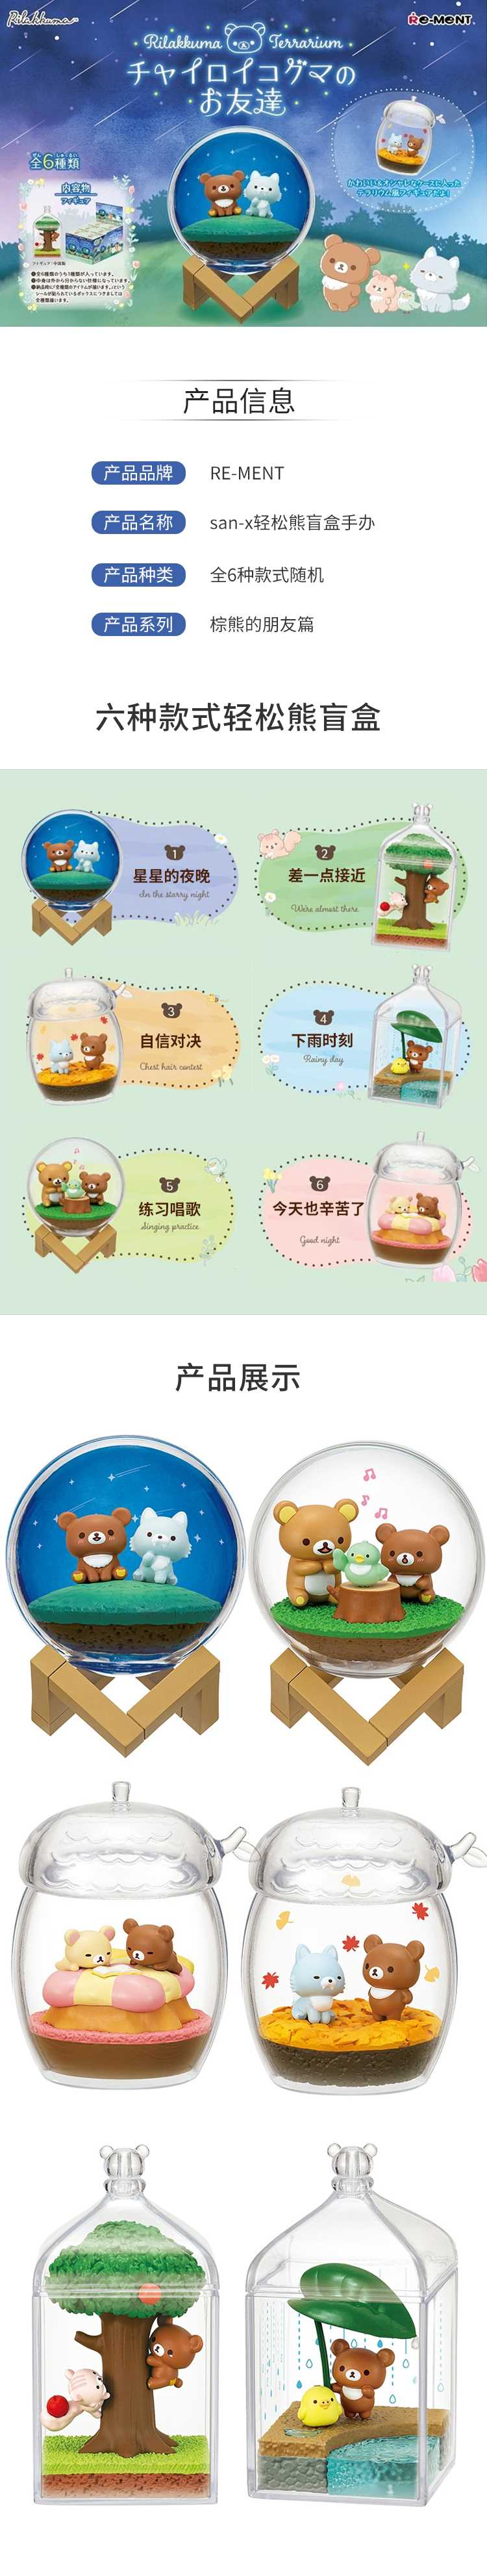 【预售周边】RE-MENT-san-x轻松熊盲盒手办全6种款式随机9月5日发售-棕熊的朋友篇.jpg